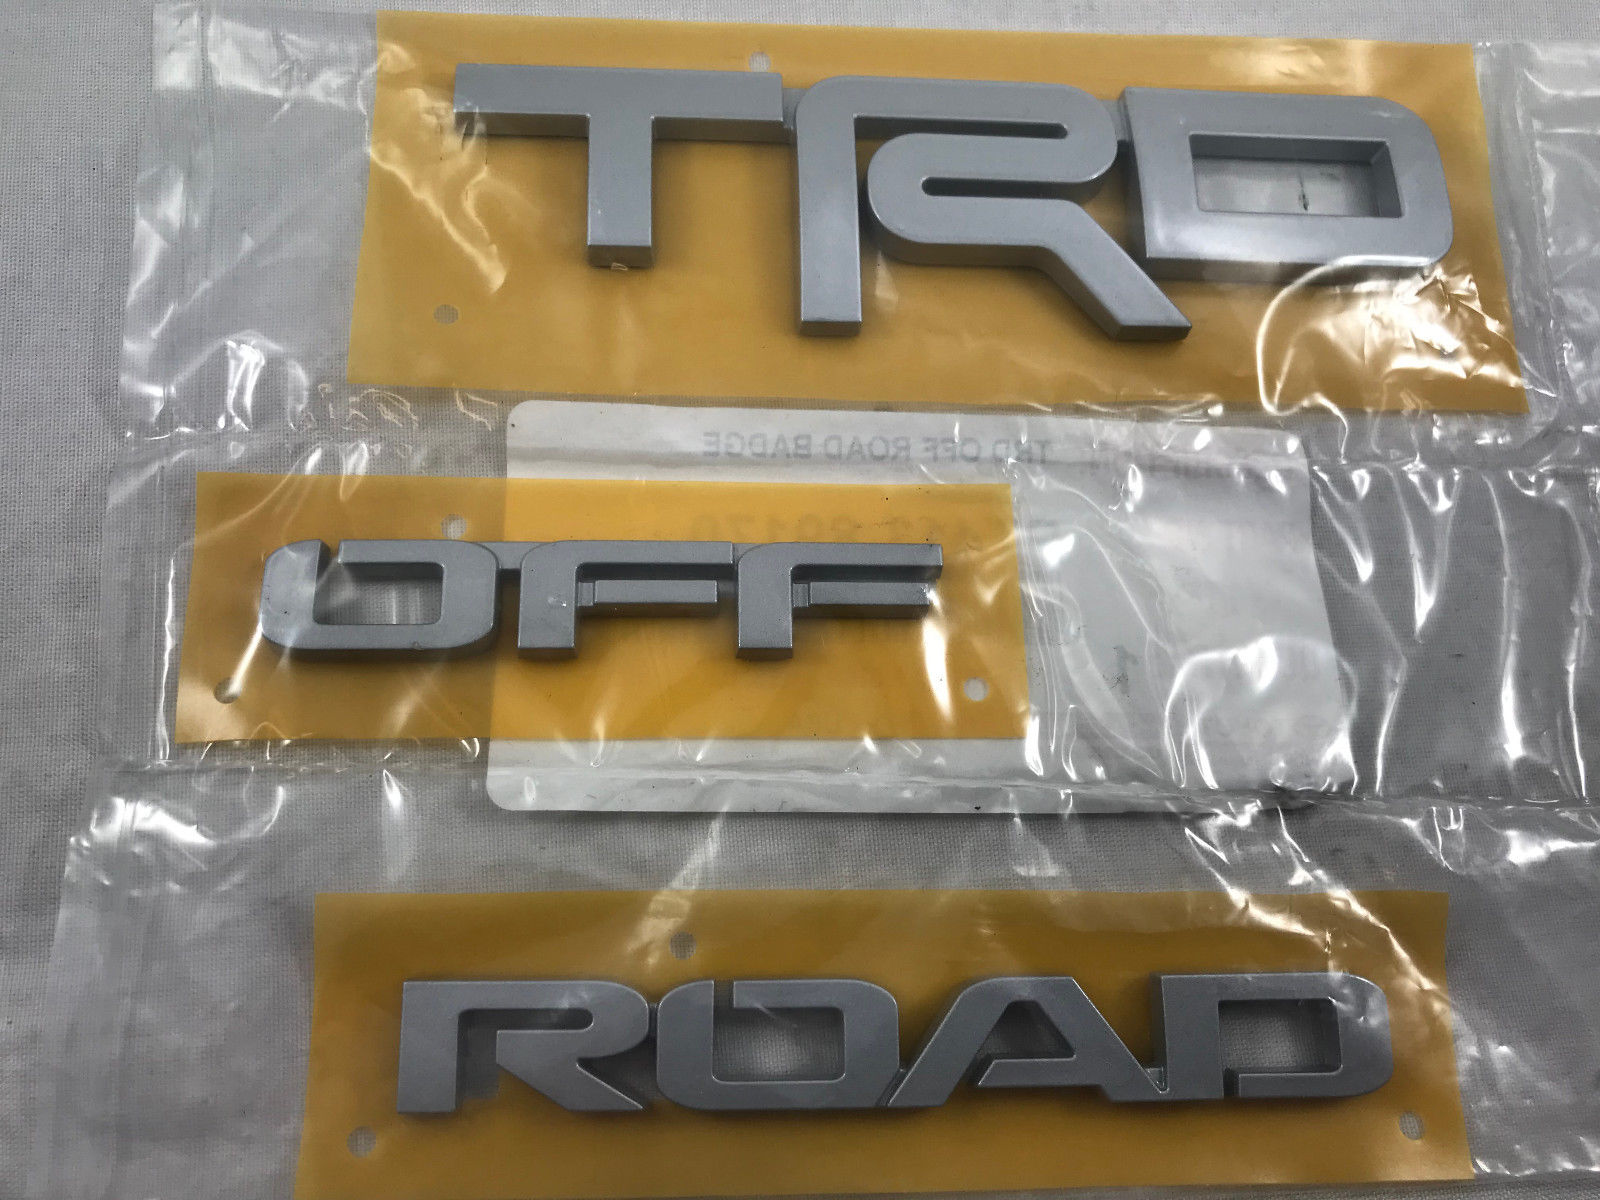 TRD Off-Road Emblem